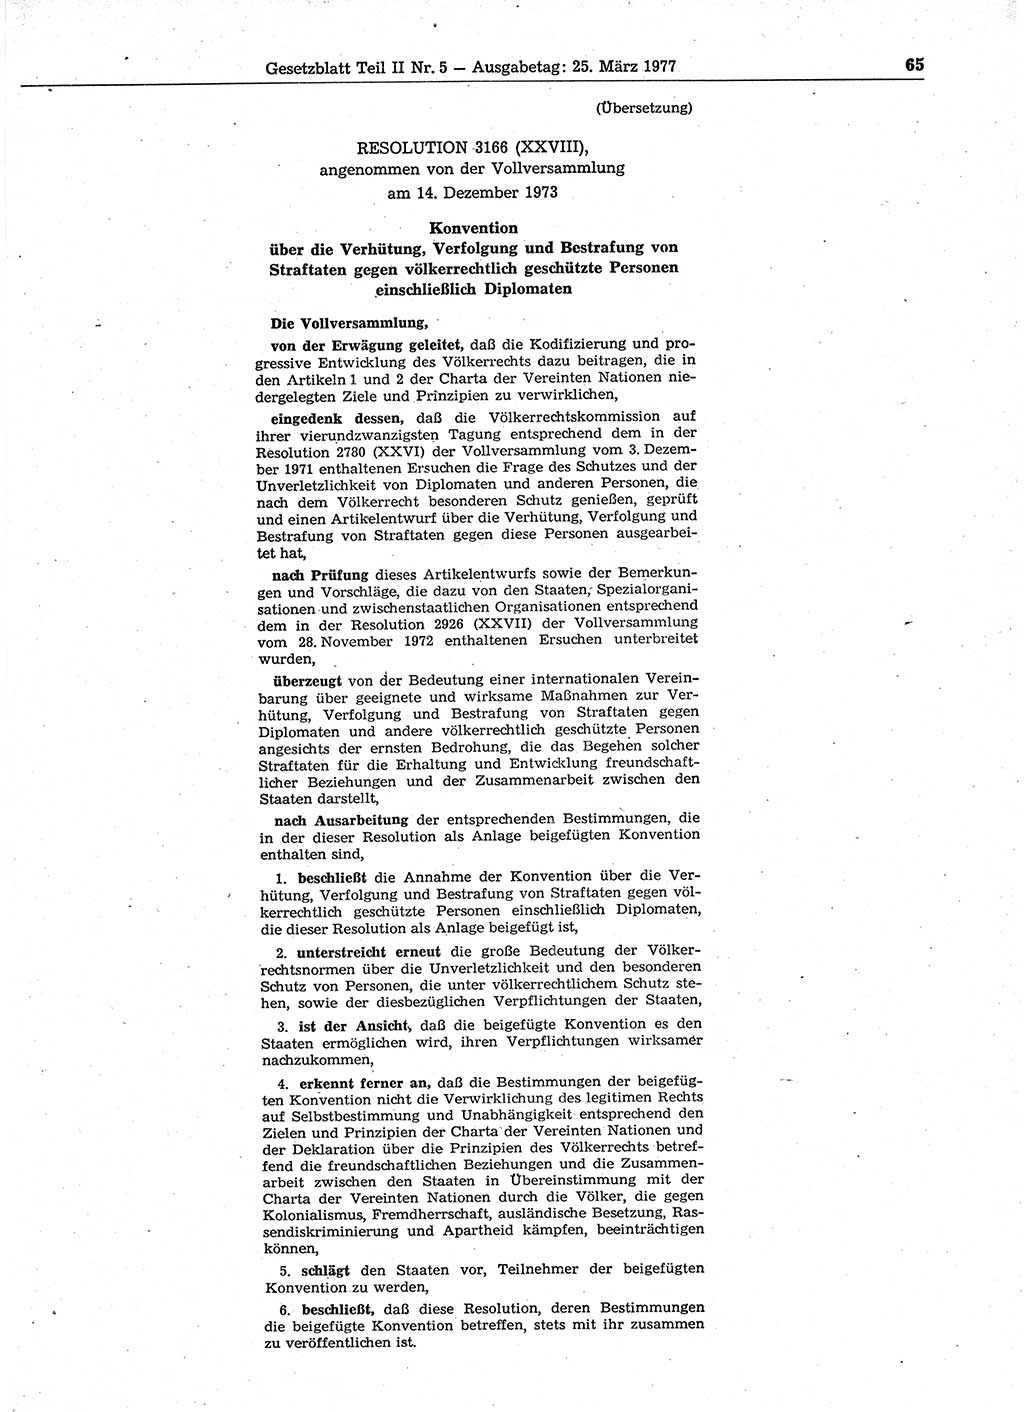 Gesetzblatt (GBl.) der Deutschen Demokratischen Republik (DDR) Teil ⅠⅠ 1977, Seite 65 (GBl. DDR ⅠⅠ 1977, S. 65)